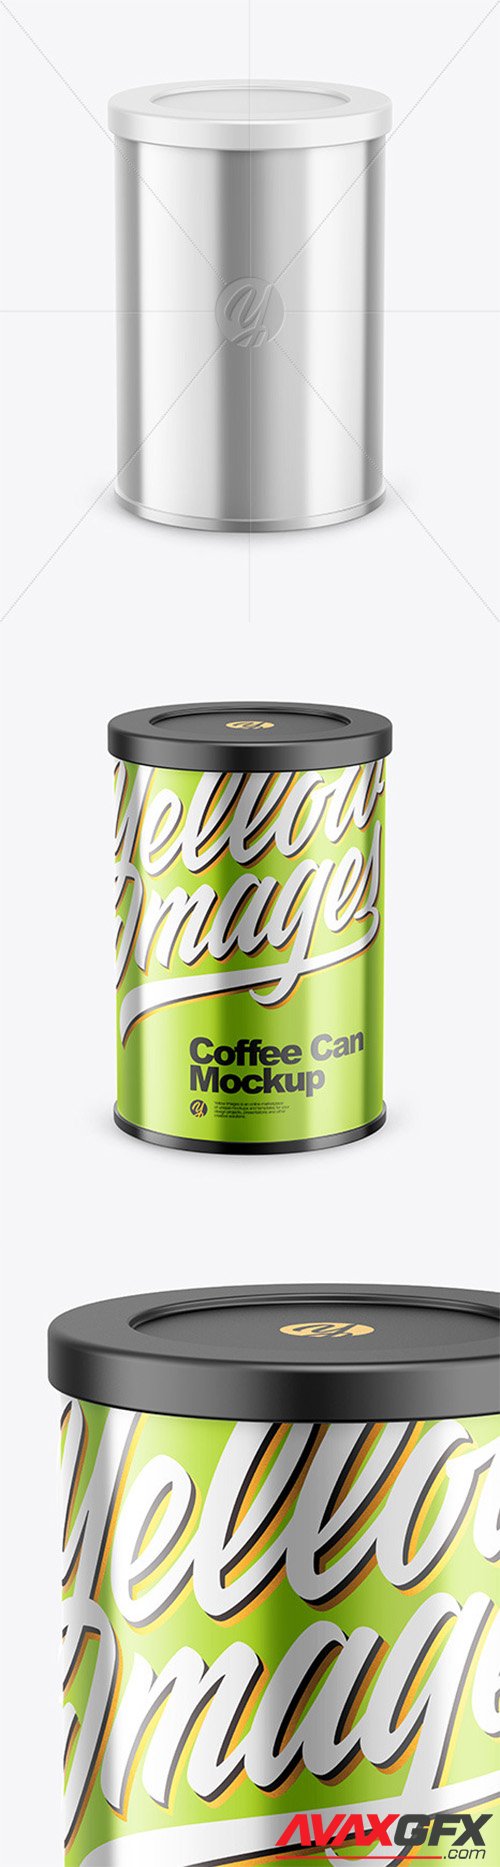 Coffee Tin Can with Glossy Metallic Finish Mockup 80612